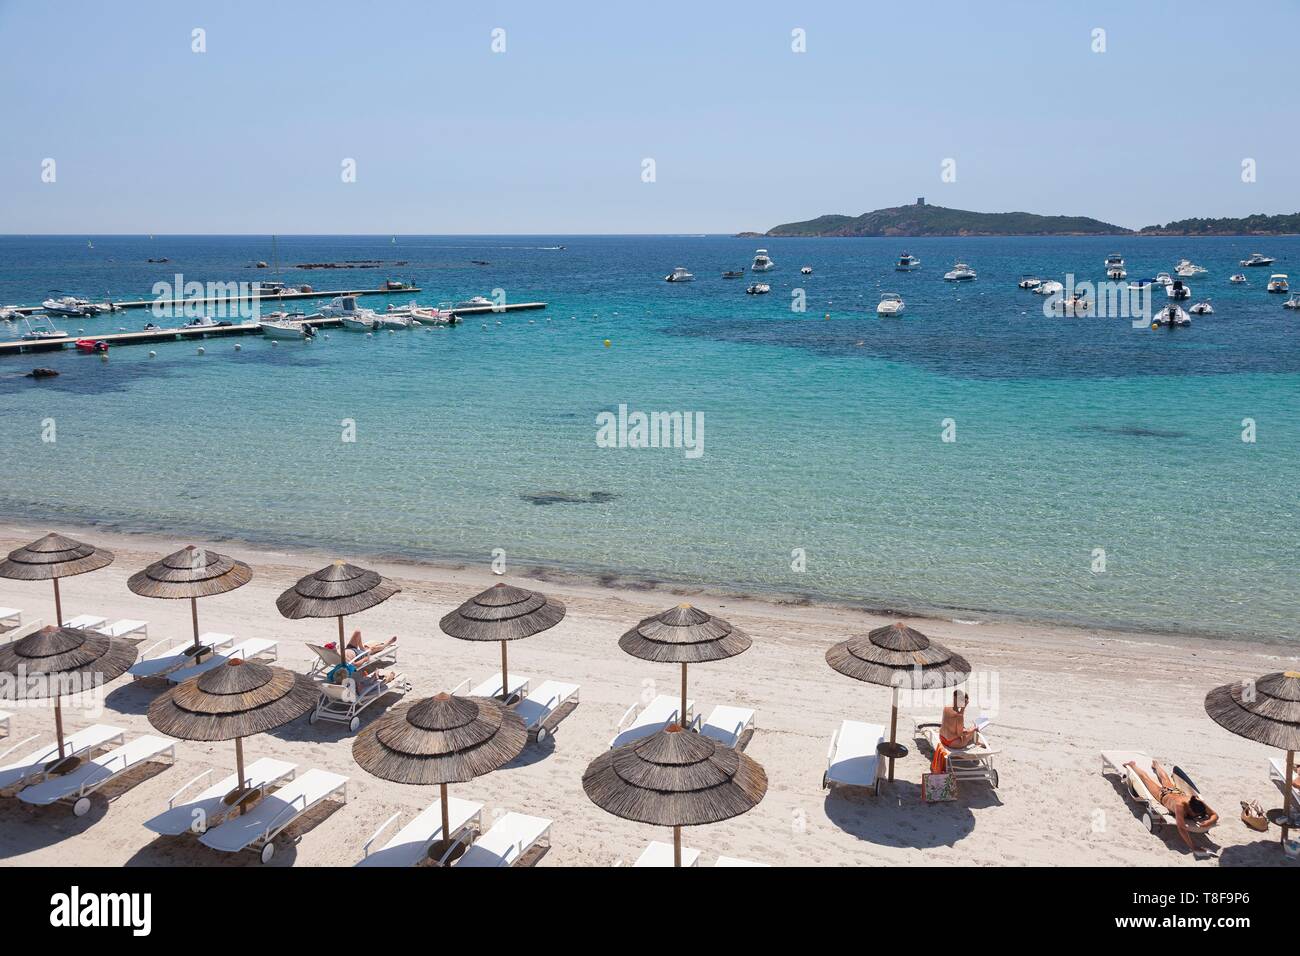 France, Corse du Sud, Zonza, Porto Vecchio Saint Lucia, the hotel Pinarello, beach Stock Photo